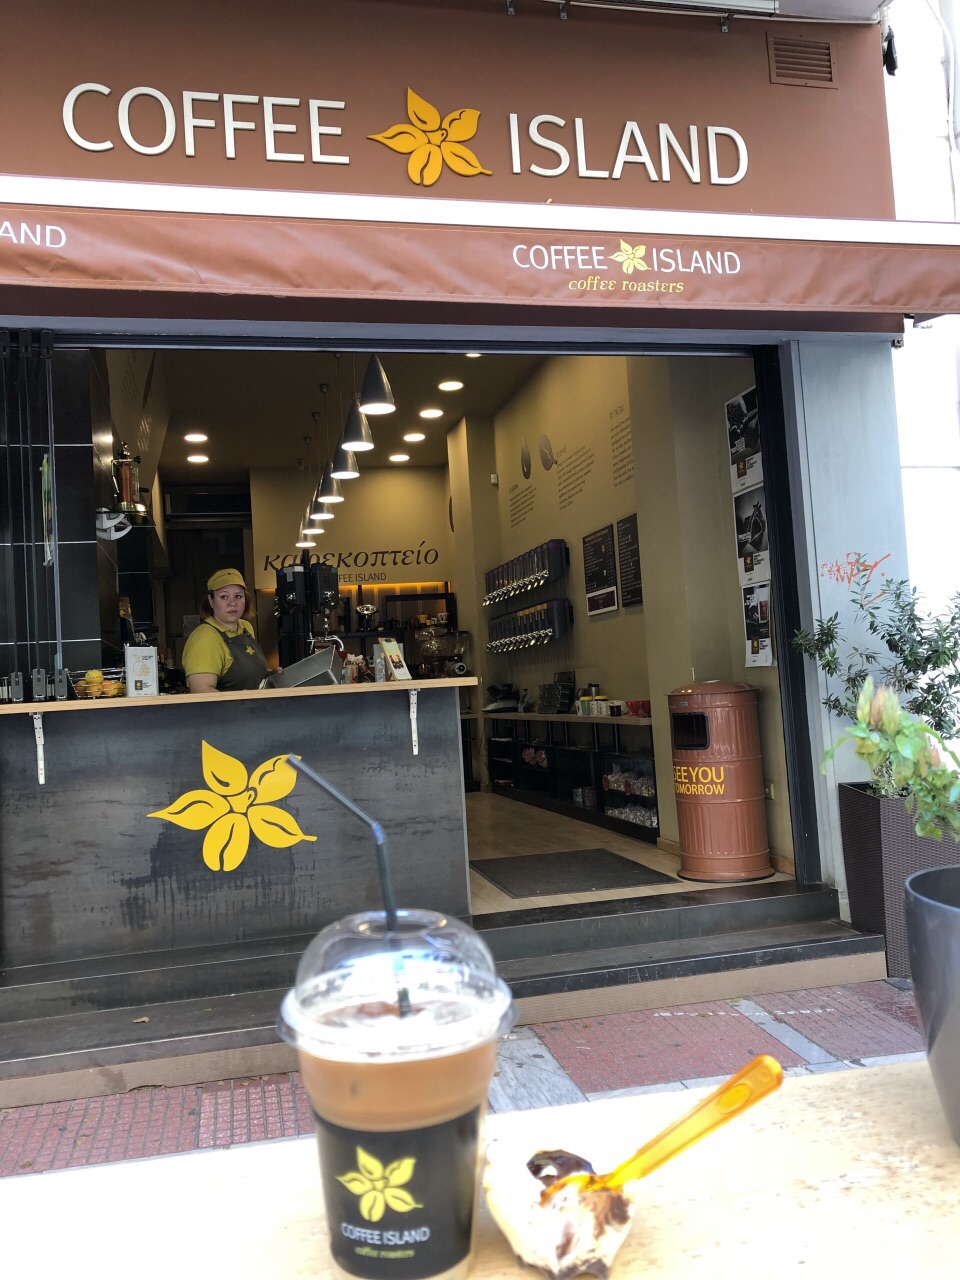 推荐雅典宪法广场附近的咖啡店和甜点